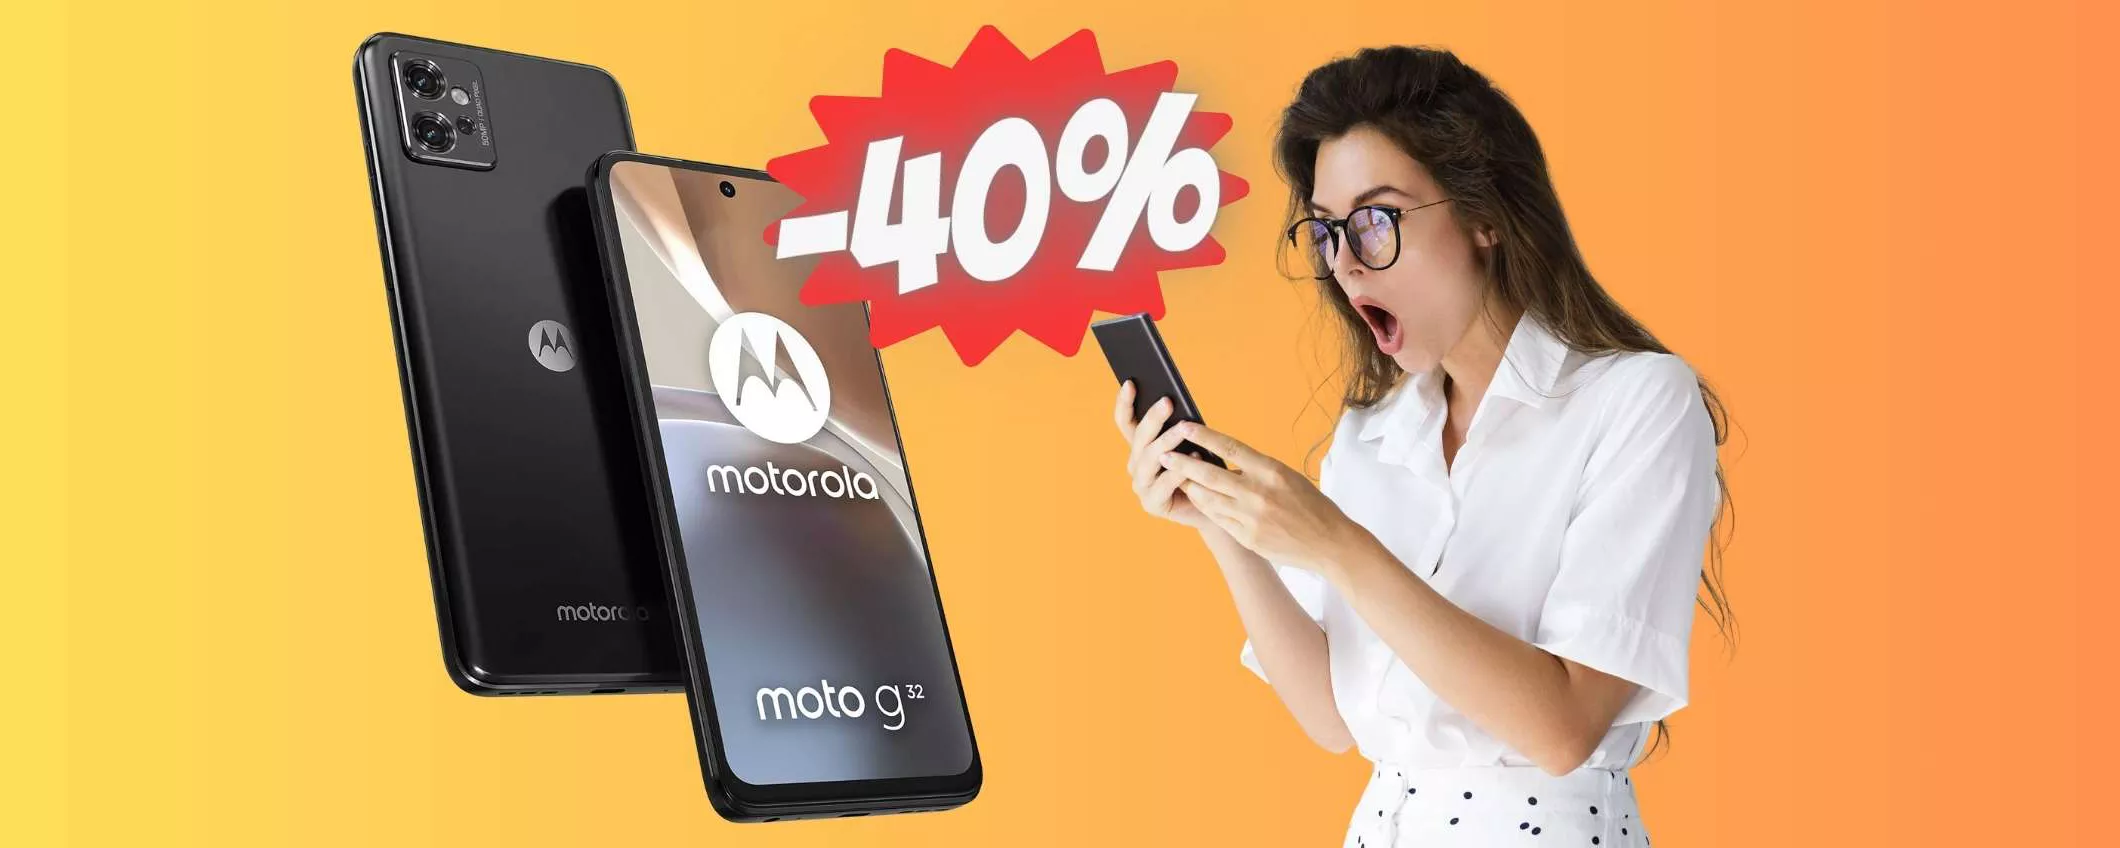 Motorola moto g32 da 256GB Dual Sim al 40% è tuo a SOLI 139€